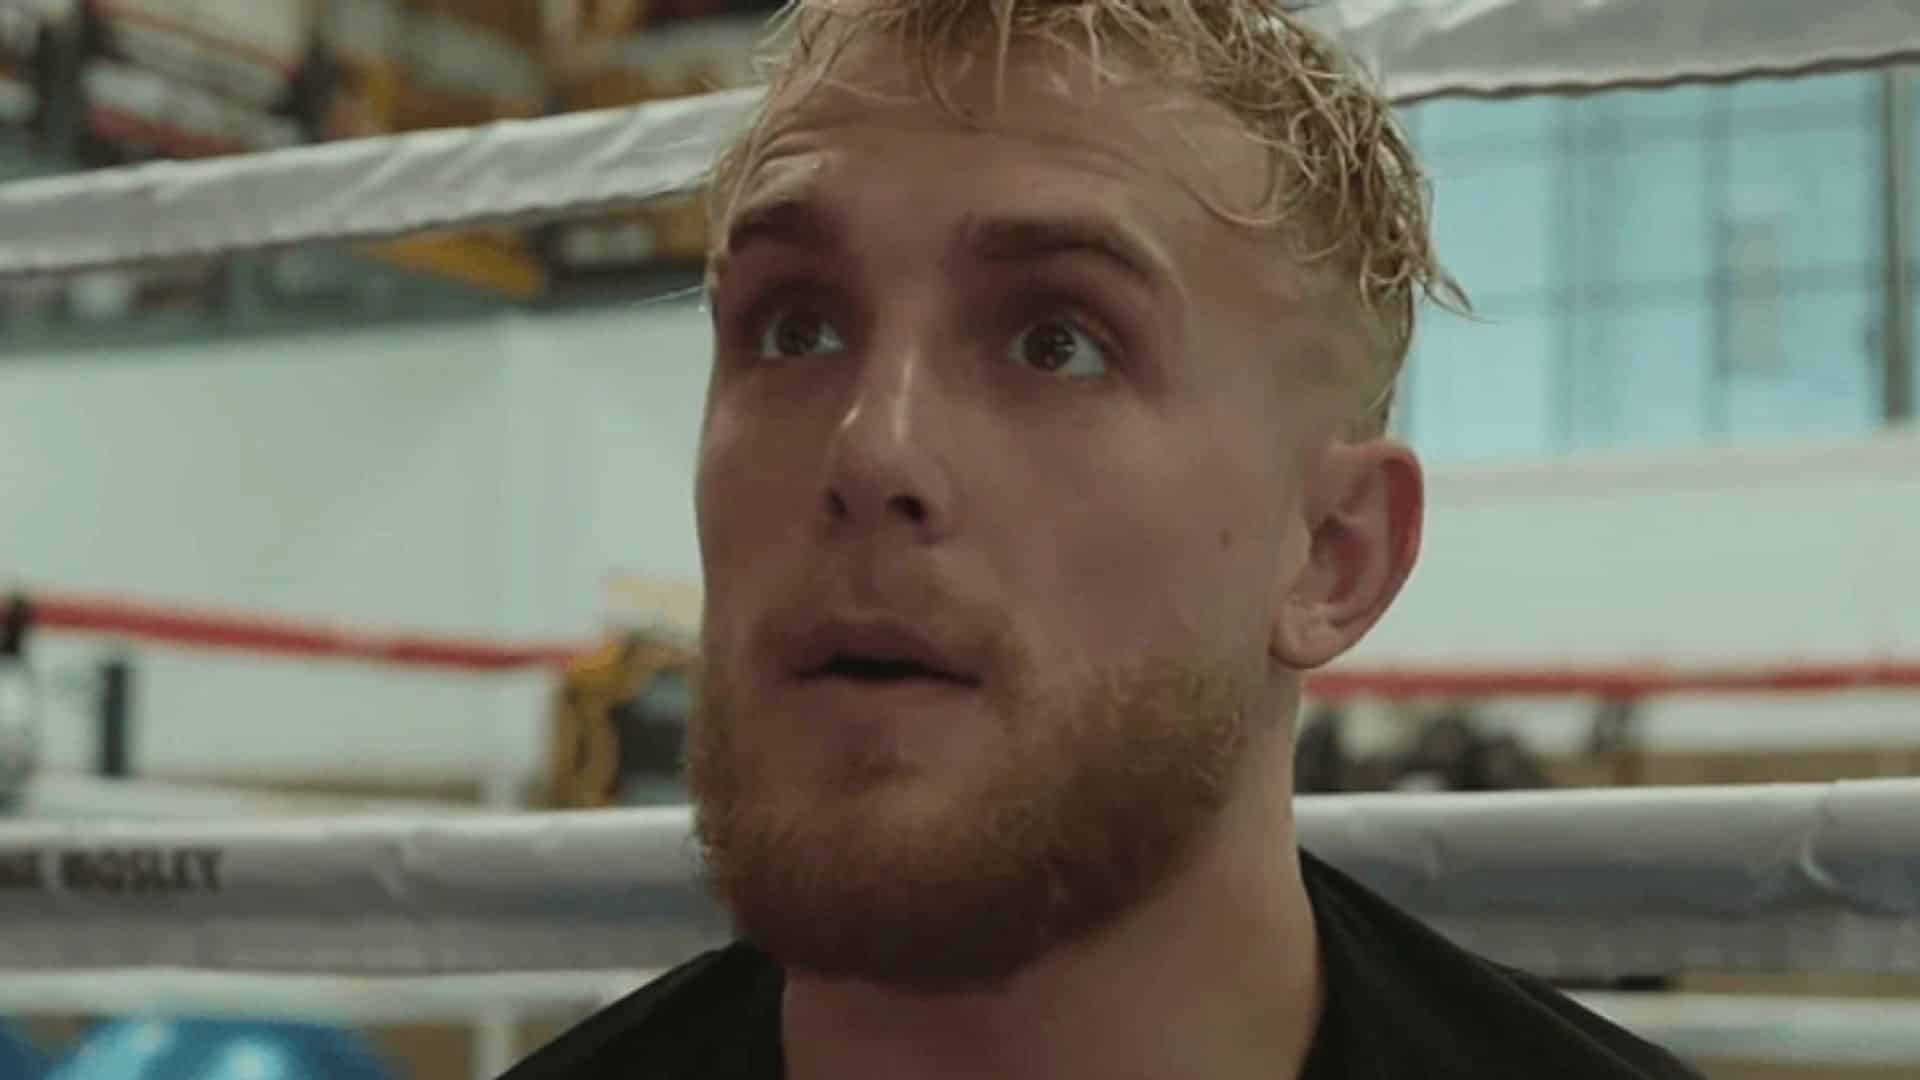 Jake Paul sat on boxing ring looking shcoked at camera